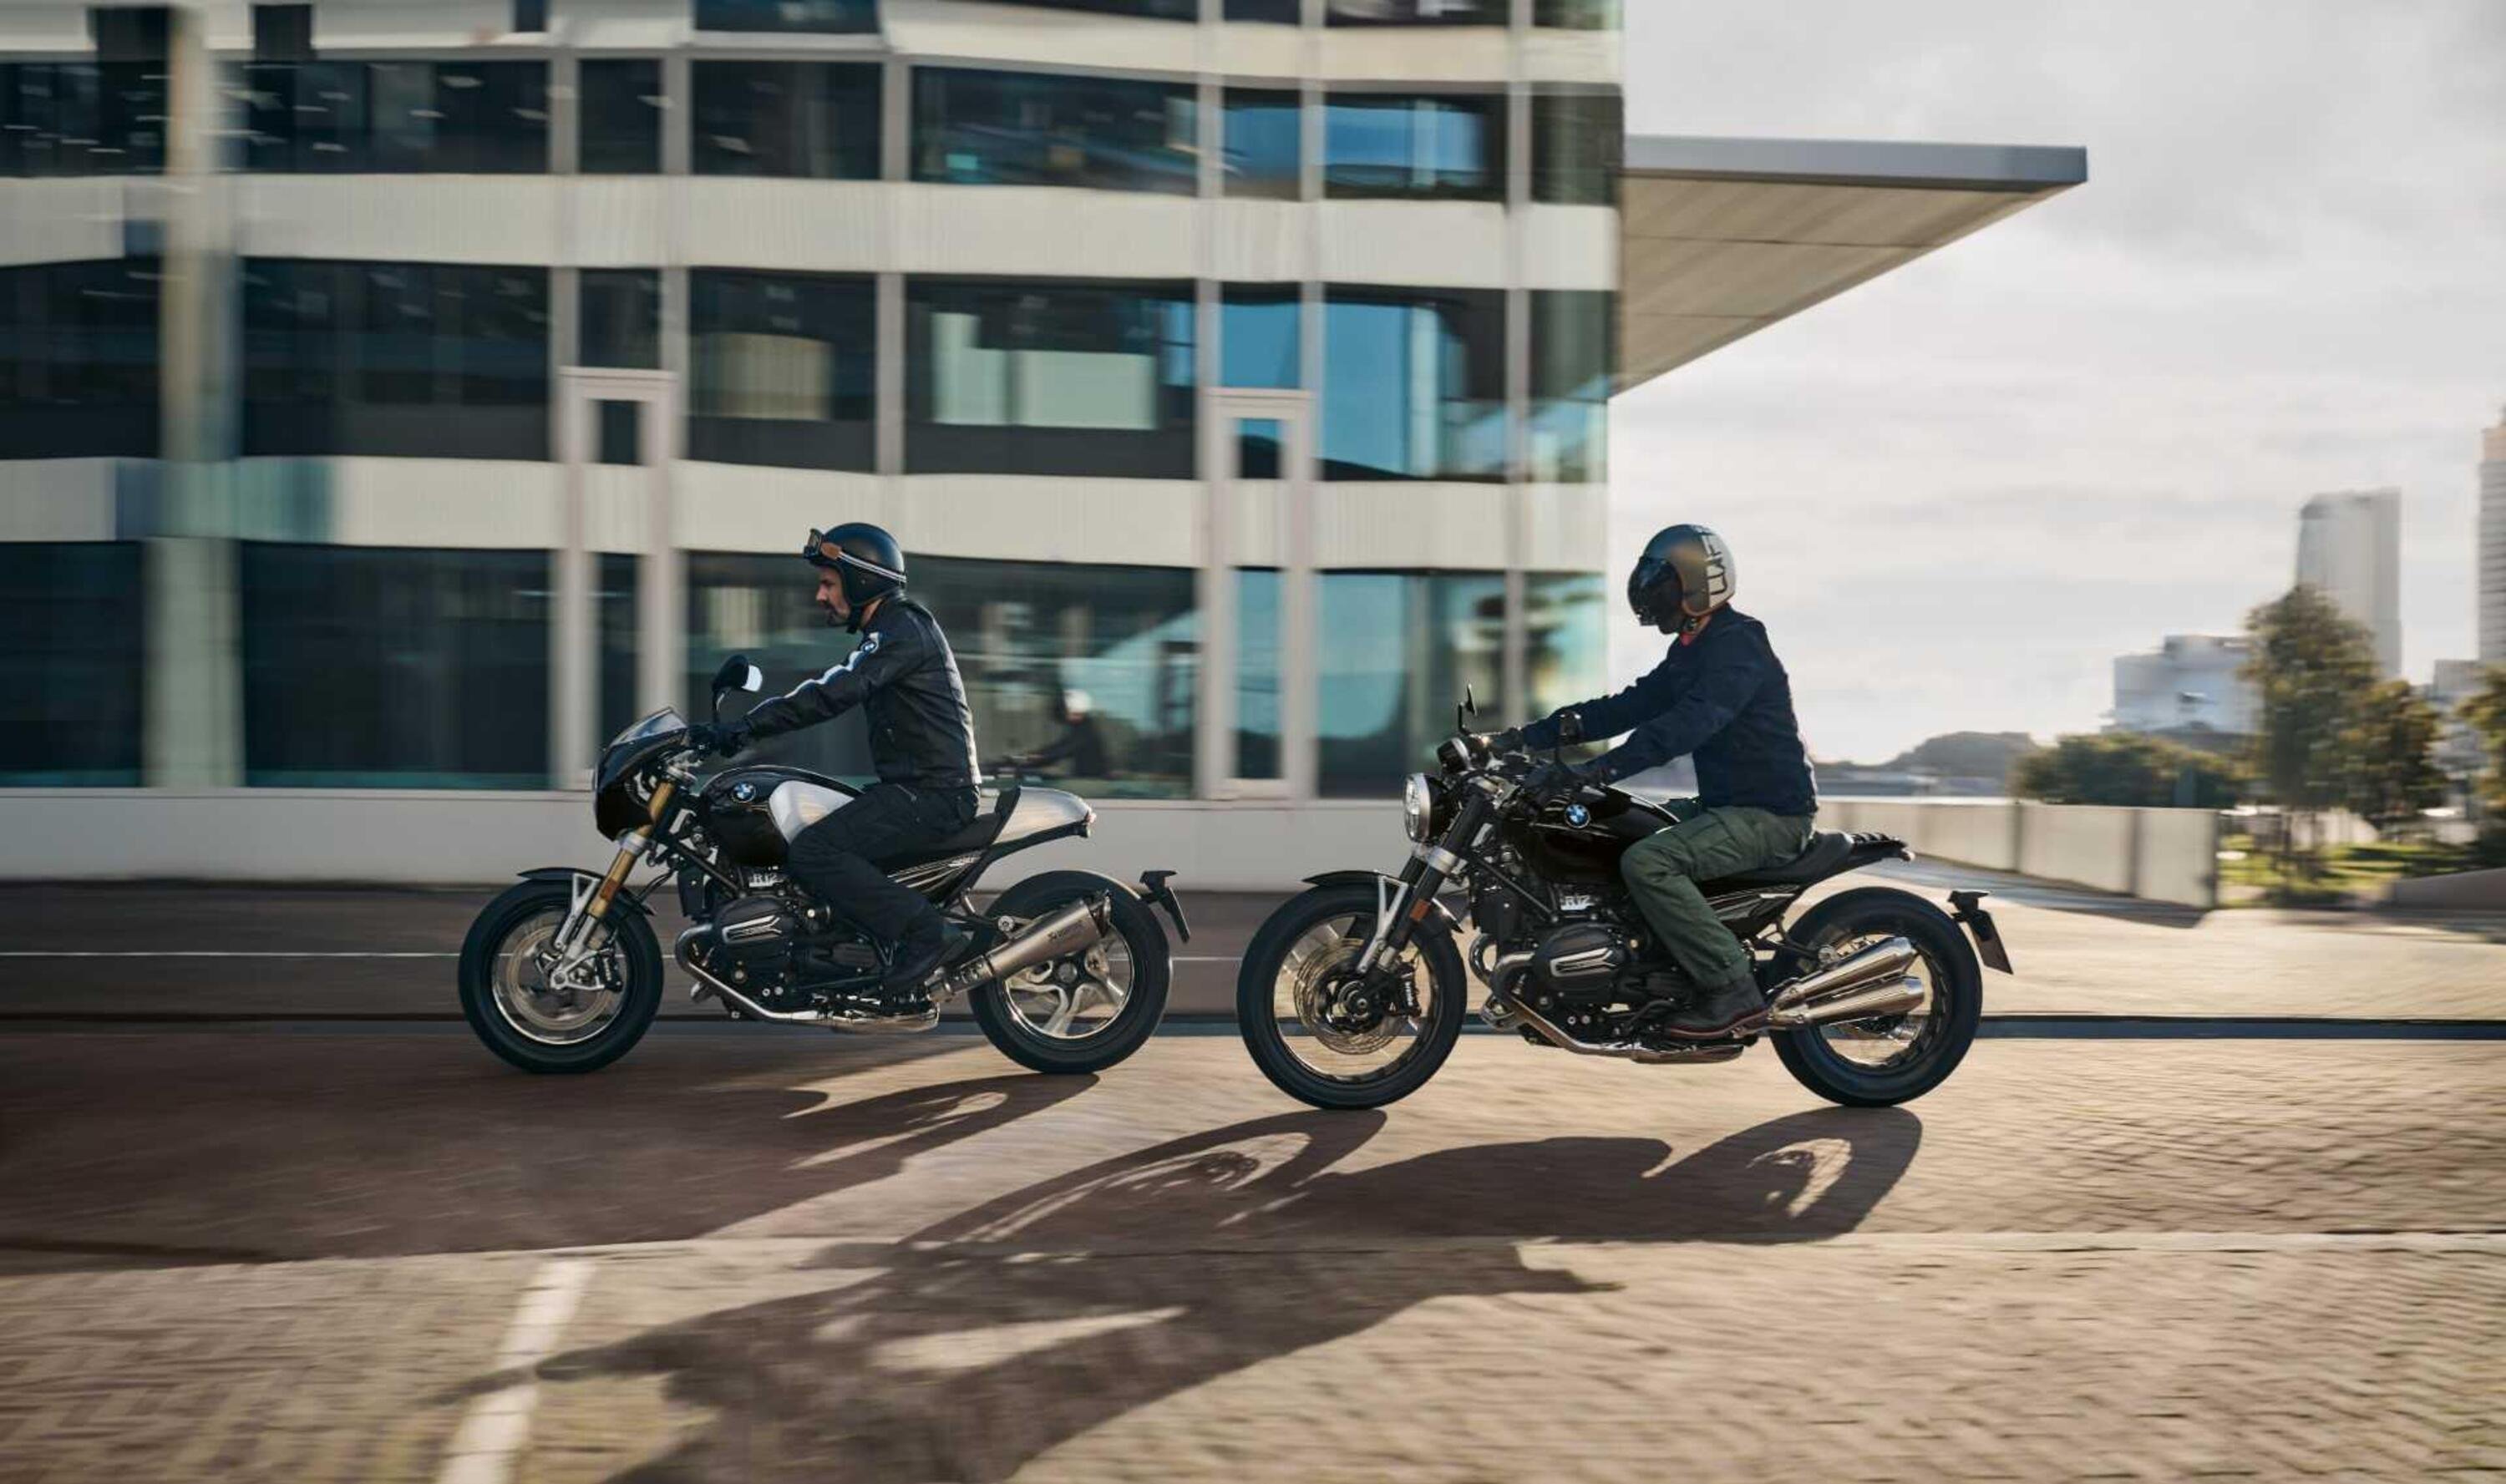 Il nuovo crossover BMW ideale per i viaggi in moto